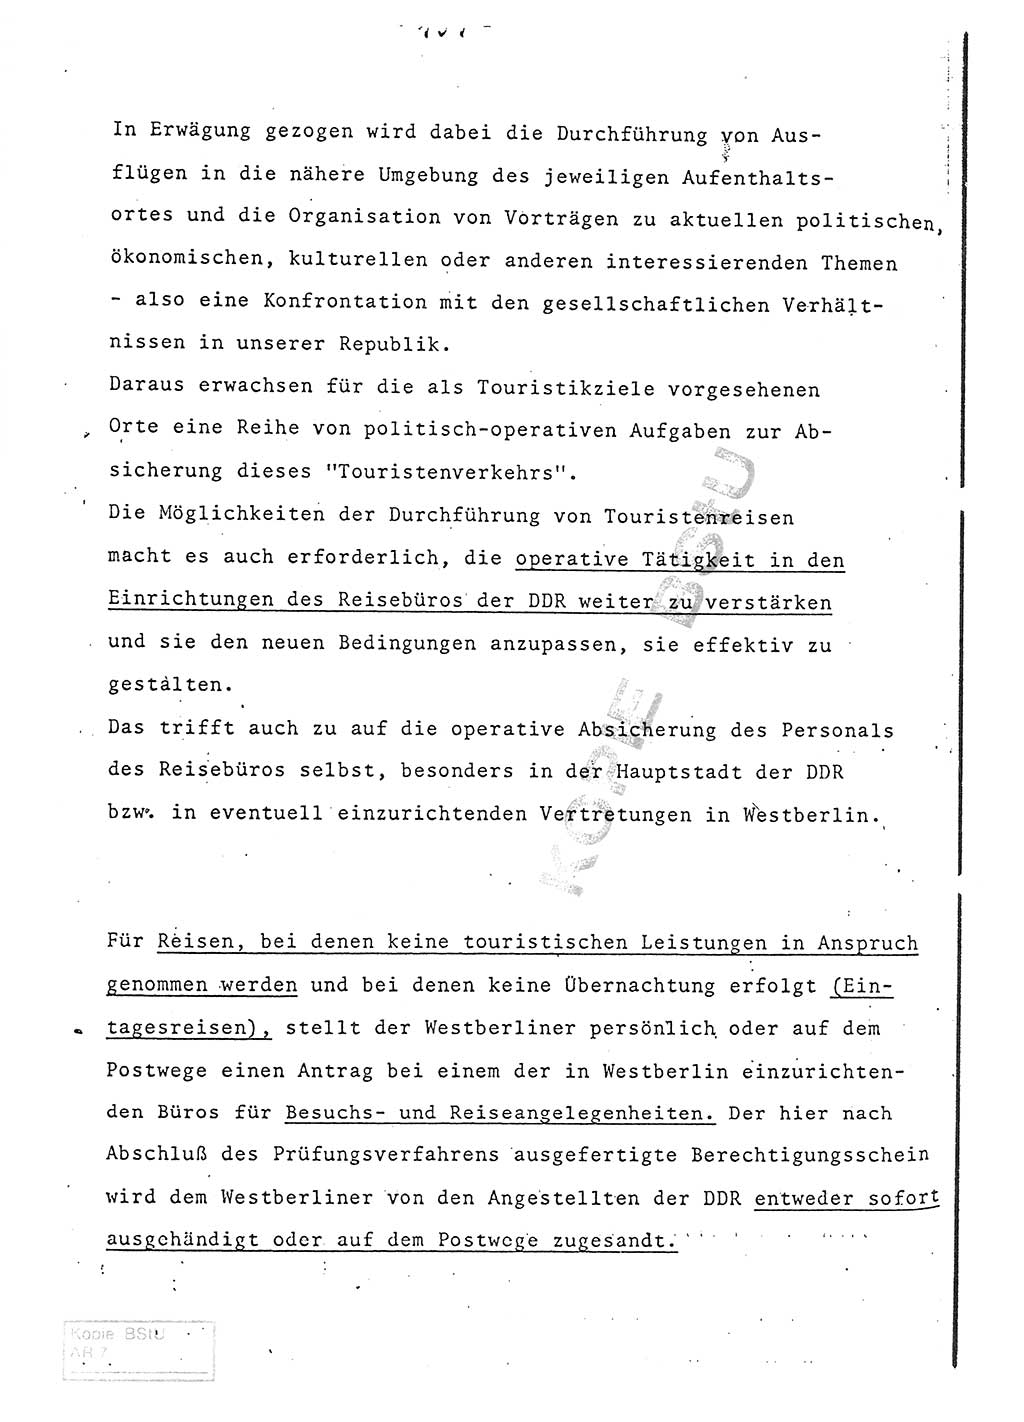 Referat (Entwurf) des Genossen Minister (Generaloberst Erich Mielke) auf der Dienstkonferenz 1972, Ministerium für Staatssicherheit (MfS) [Deutsche Demokratische Republik (DDR)], Der Minister, Geheime Verschlußsache (GVS) 008-150/72, Berlin 25.2.1972, Seite 181 (Ref. Entw. DK MfS DDR Min. GVS 008-150/72 1972, S. 181)